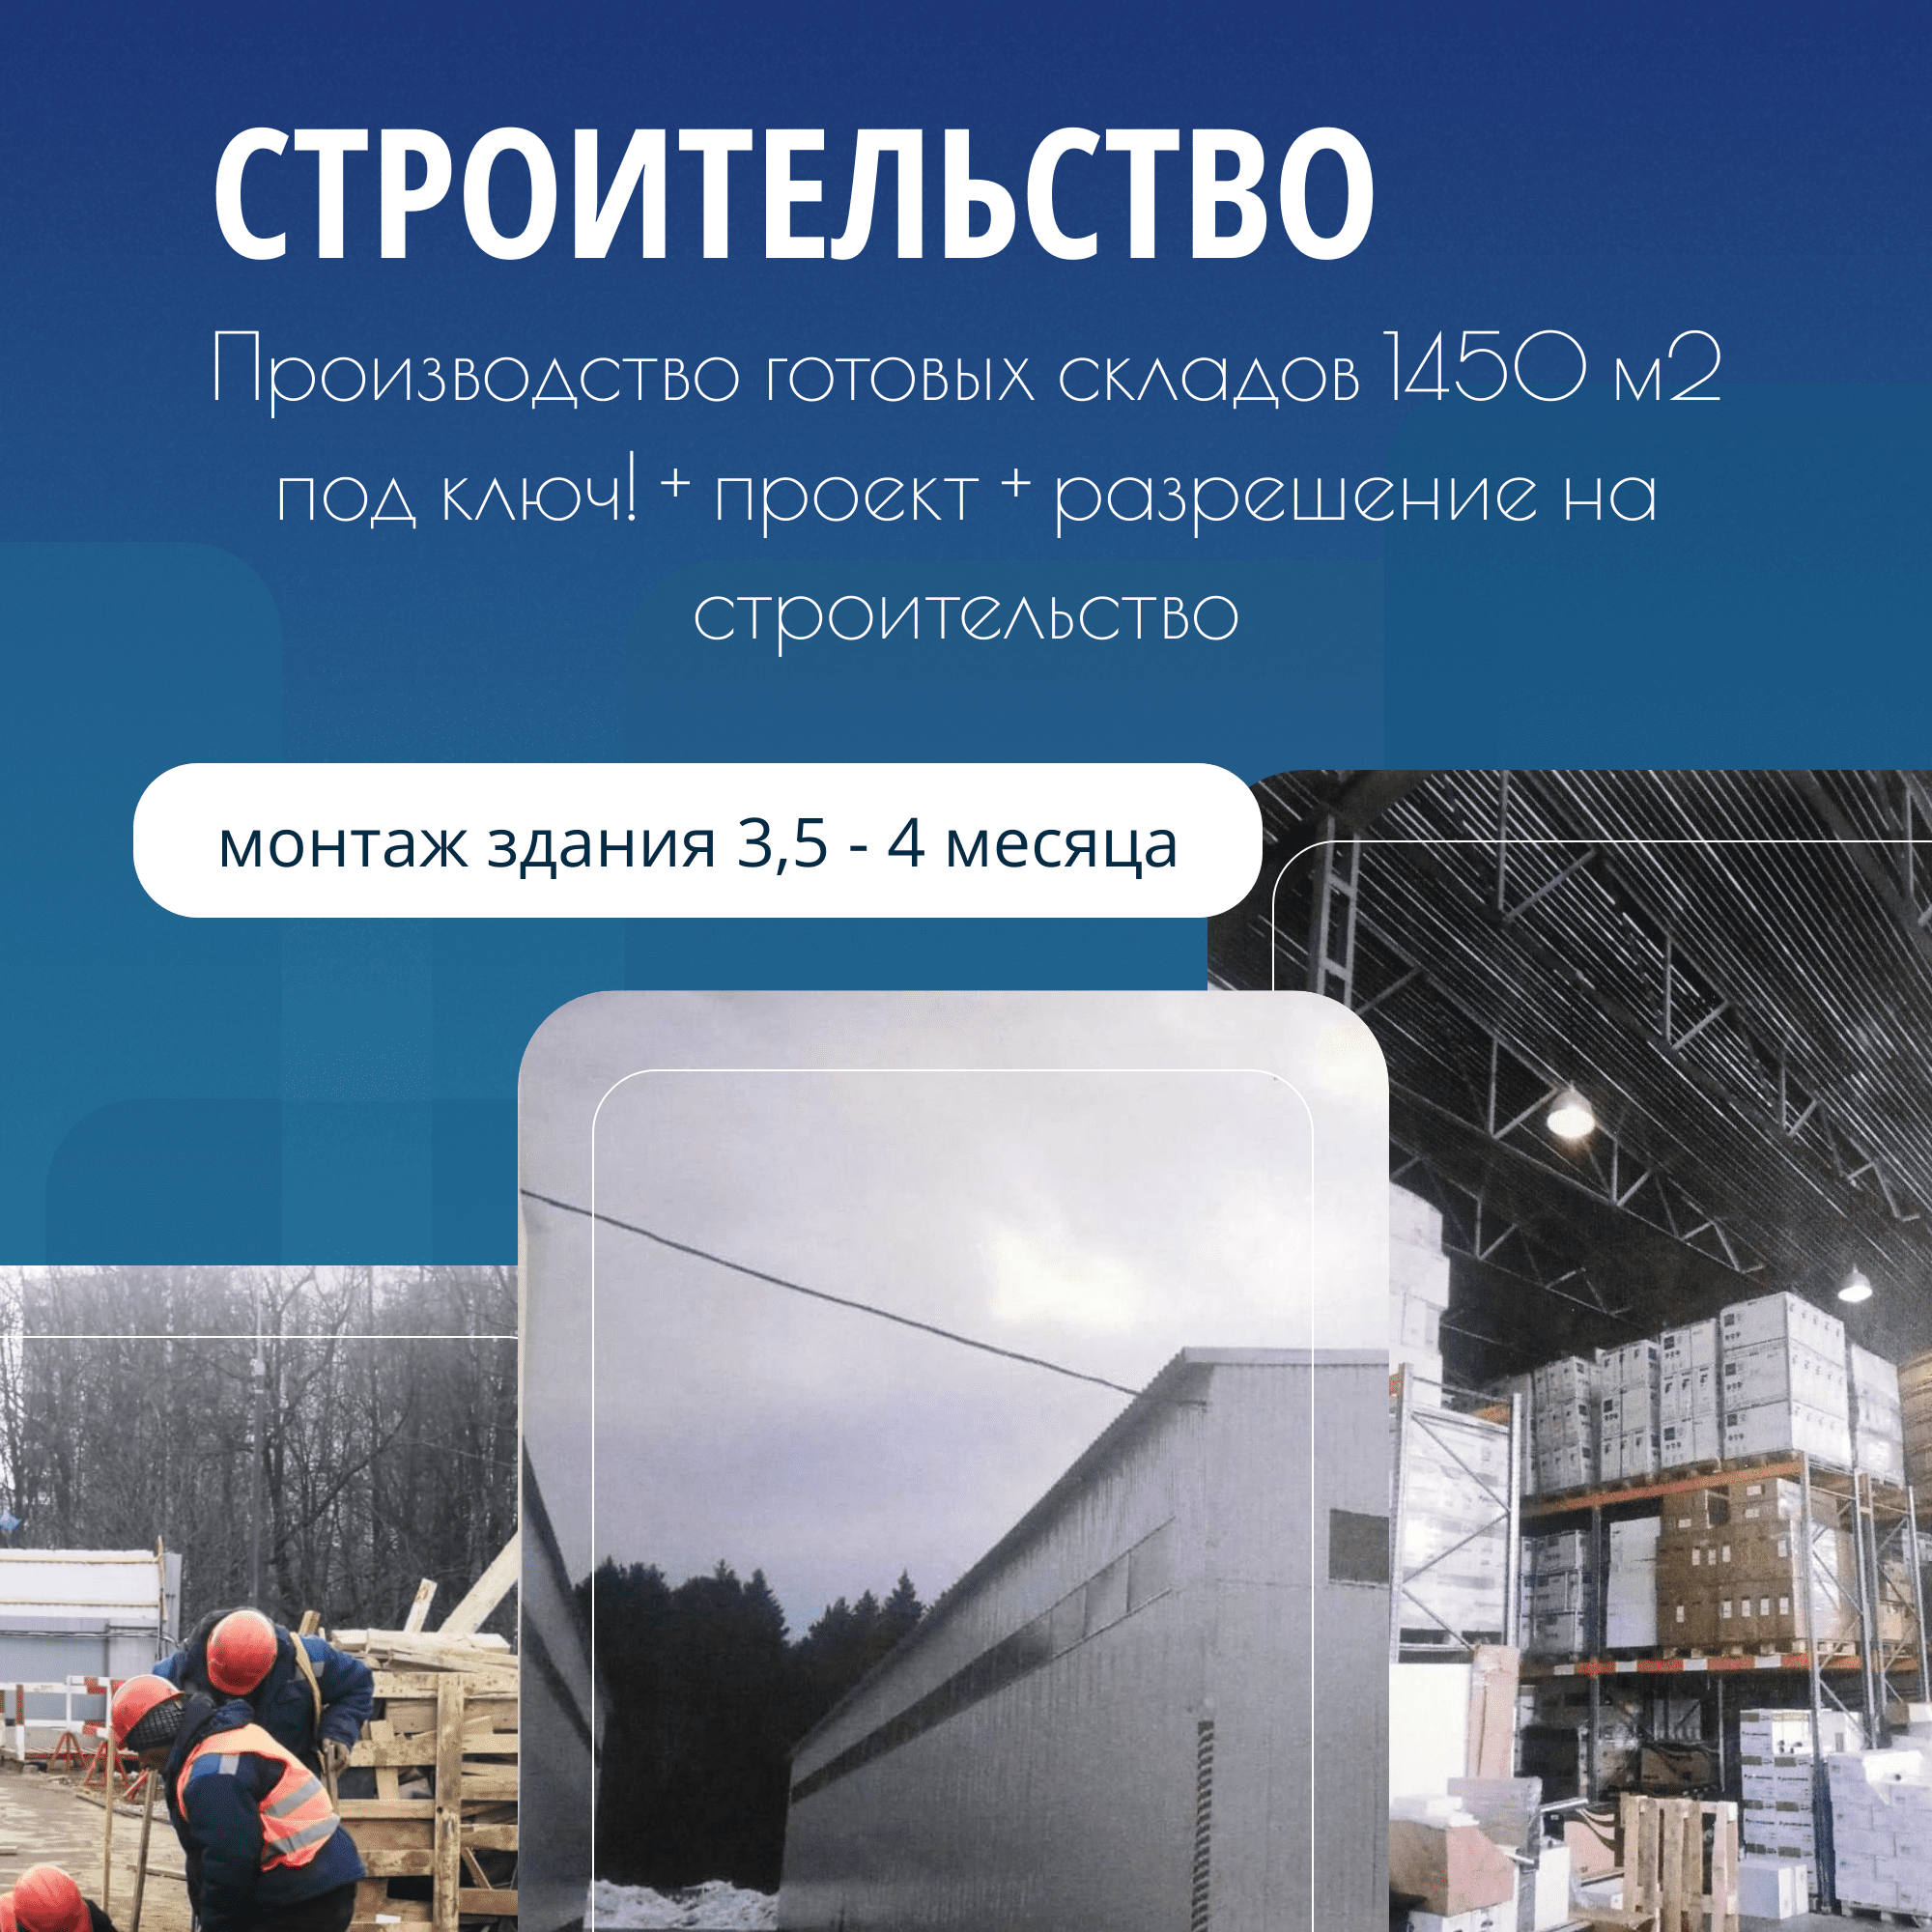 Cтроительство складов и ангаров в Москве, Московской области из металлоконструкций и сэндвич-панелей под ключ